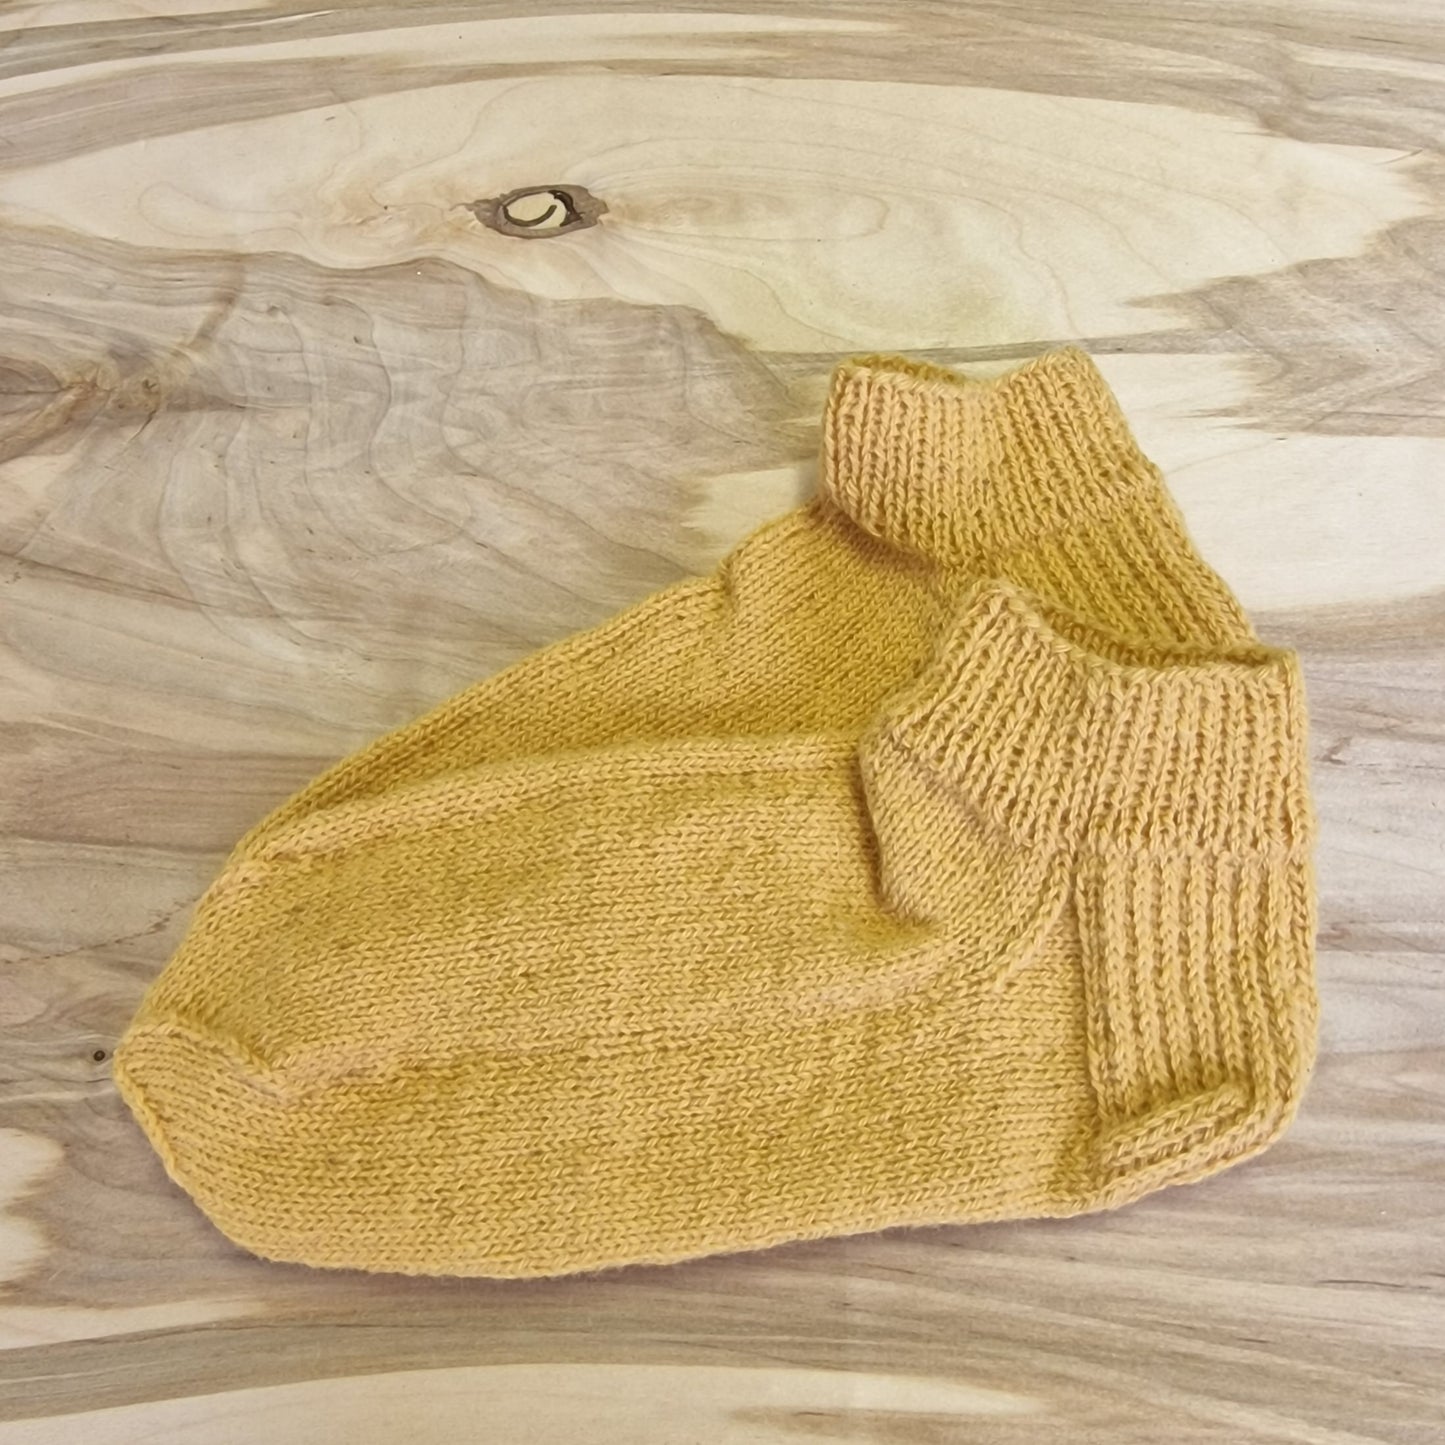 Light yellow brown short woolen socks size 40-42. (ASZE 3)